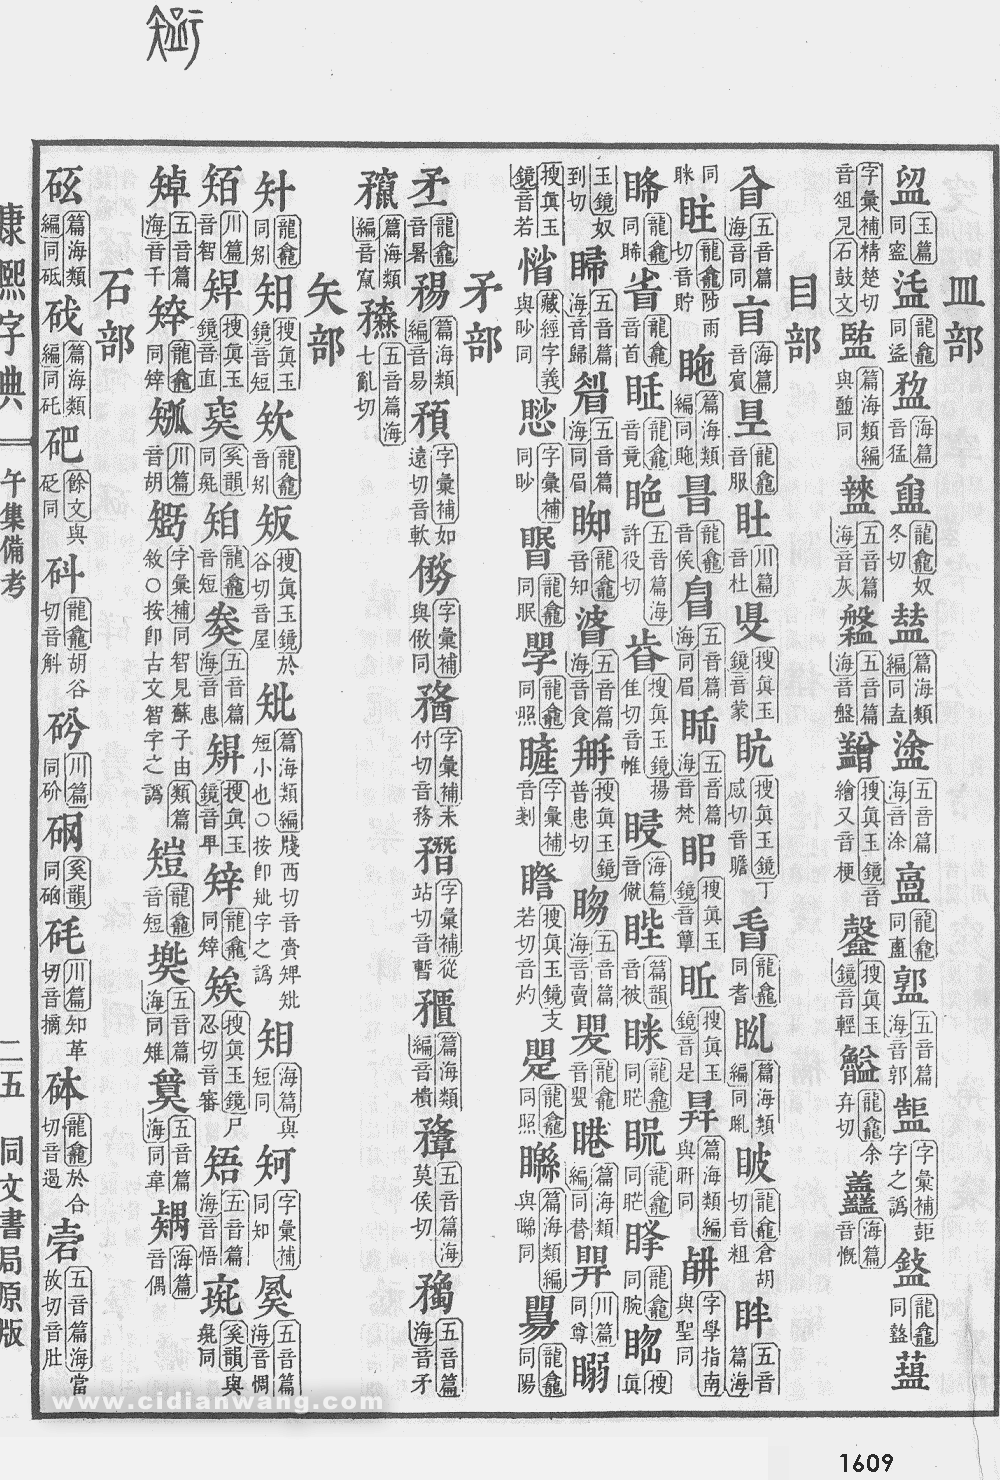 康熙字典掃描版第1609頁